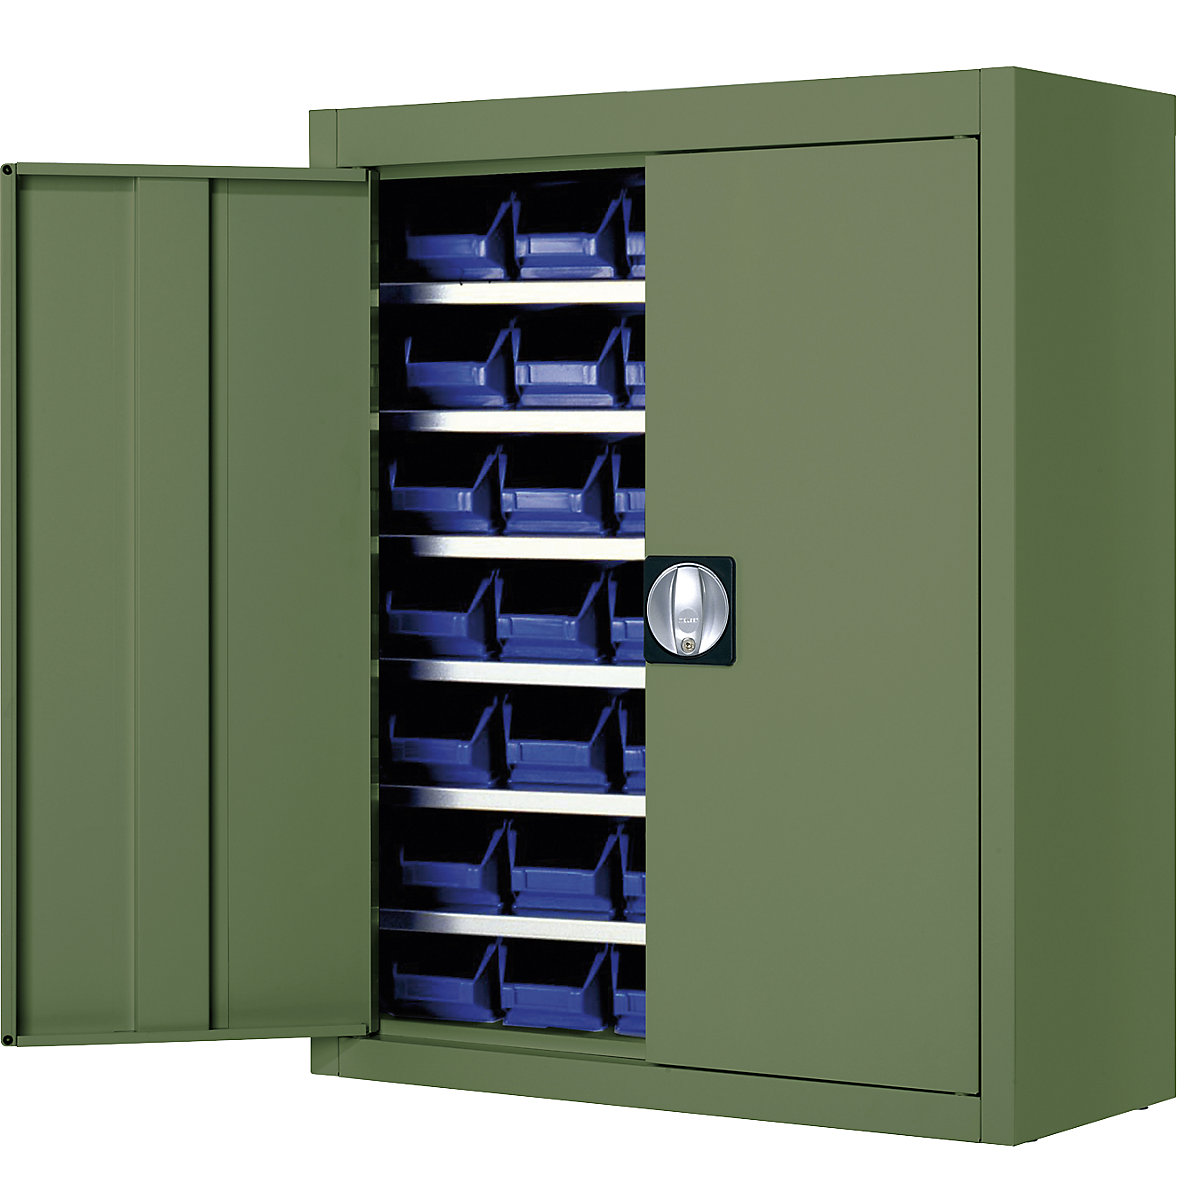 Skladiščna omara z odprtimi skladiščnimi posodami – mauser, VxŠxG 820 x 680 x 280 mm, ena barva, zelena, 42 posod-5